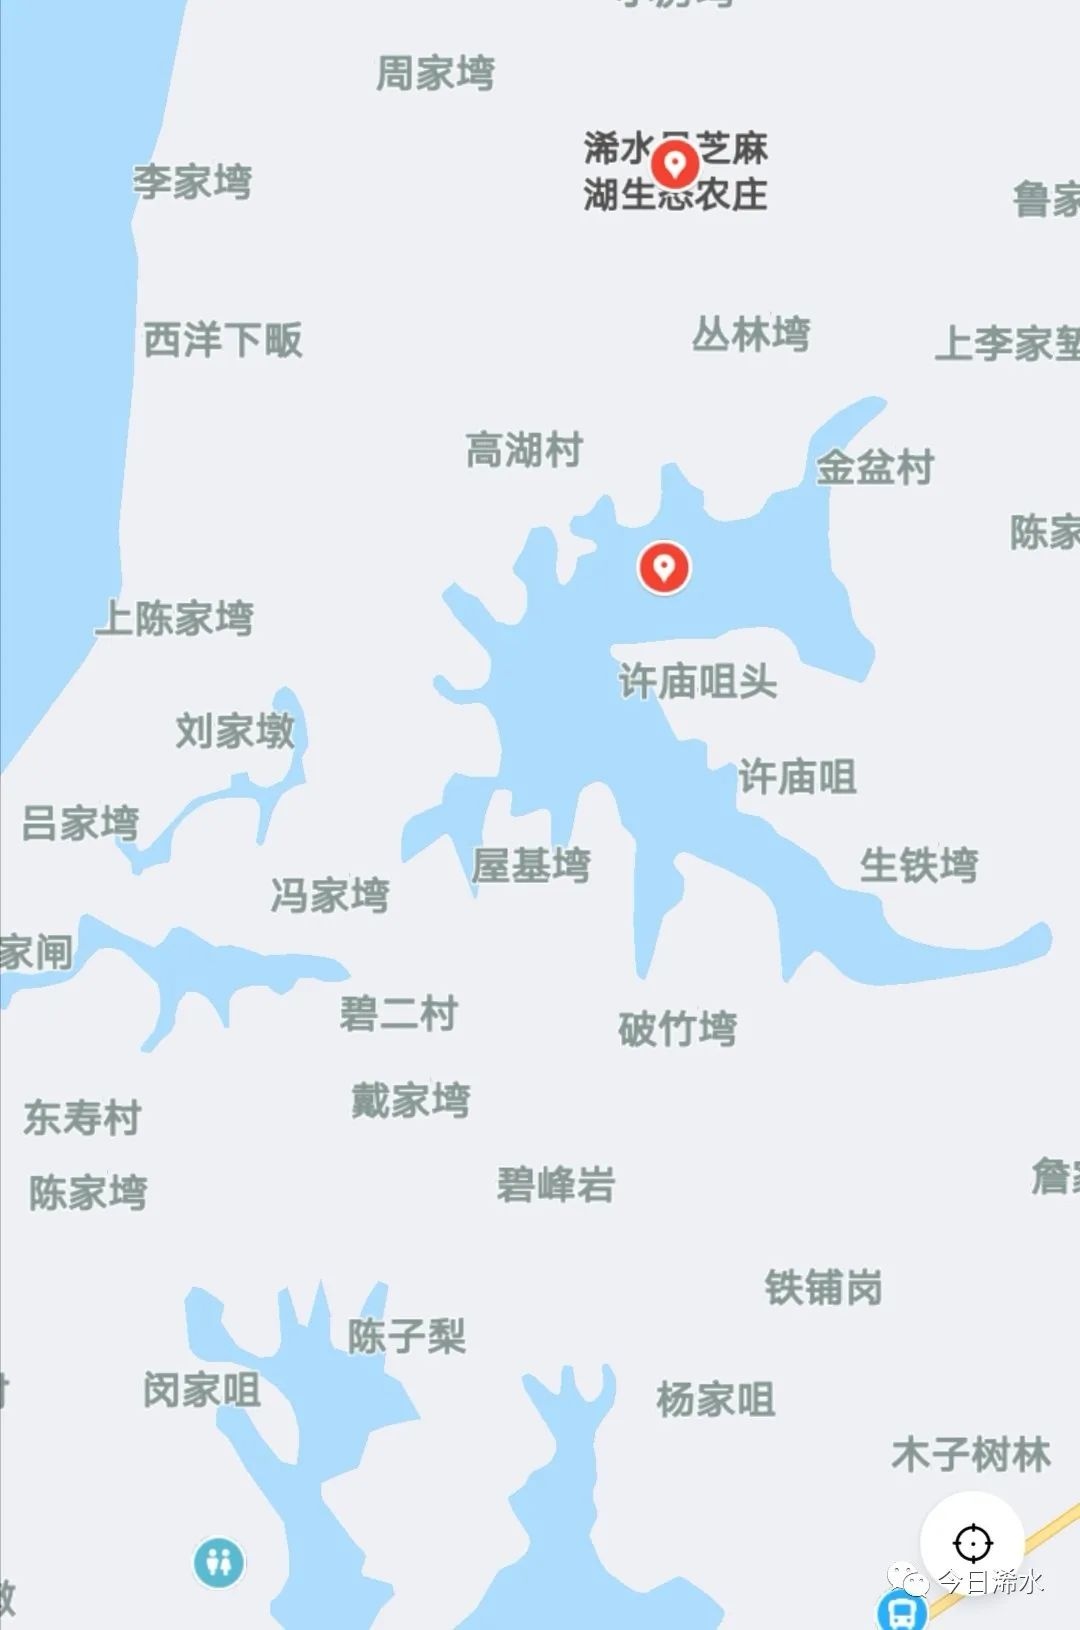 浠水乡镇地图分布图片